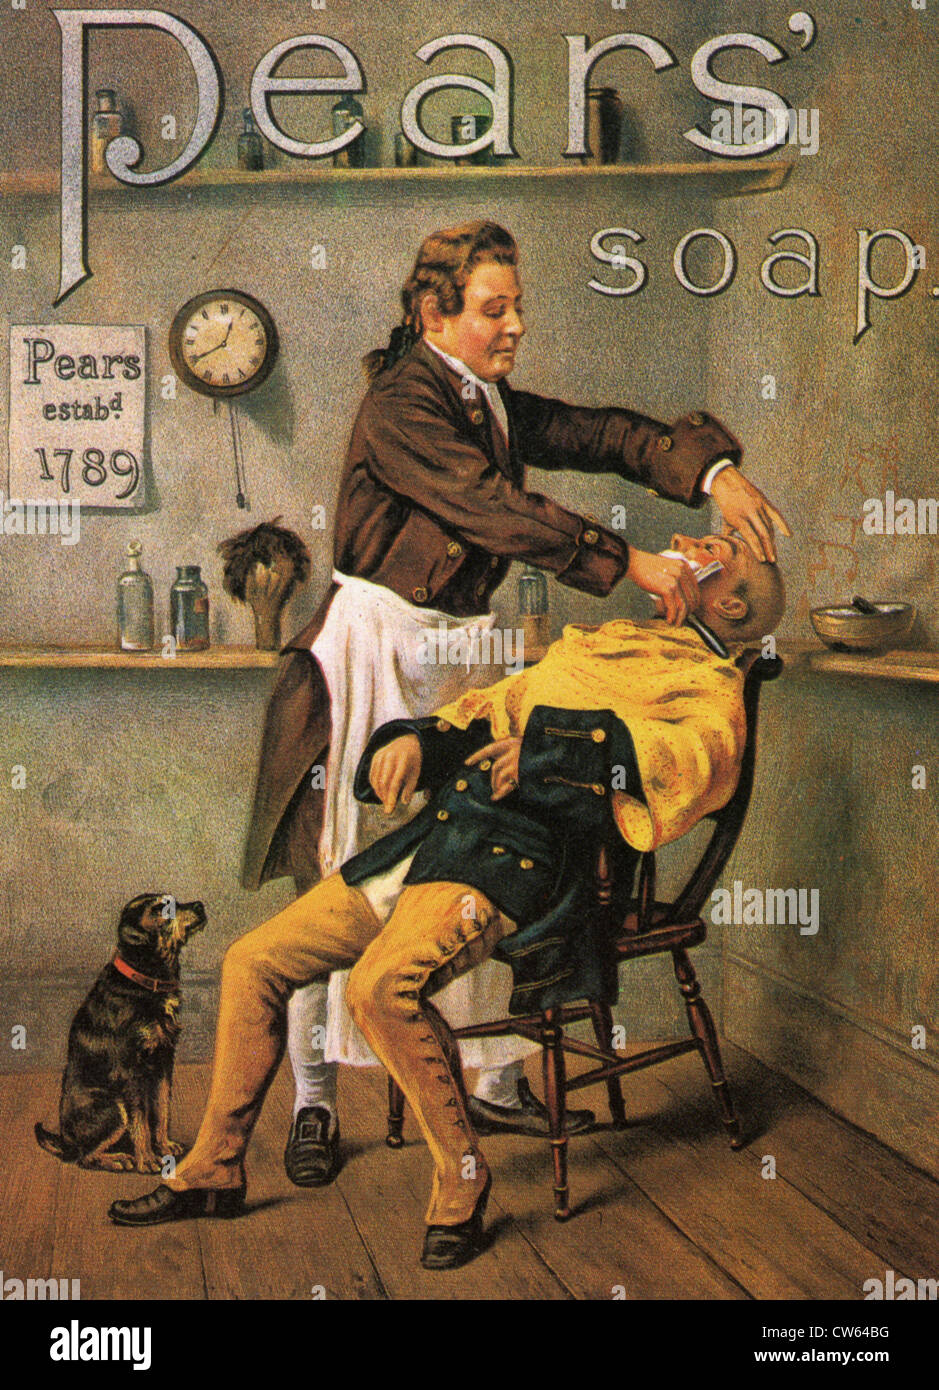 BIRNEN SOAP ANZEIGE 1891 Stockfoto